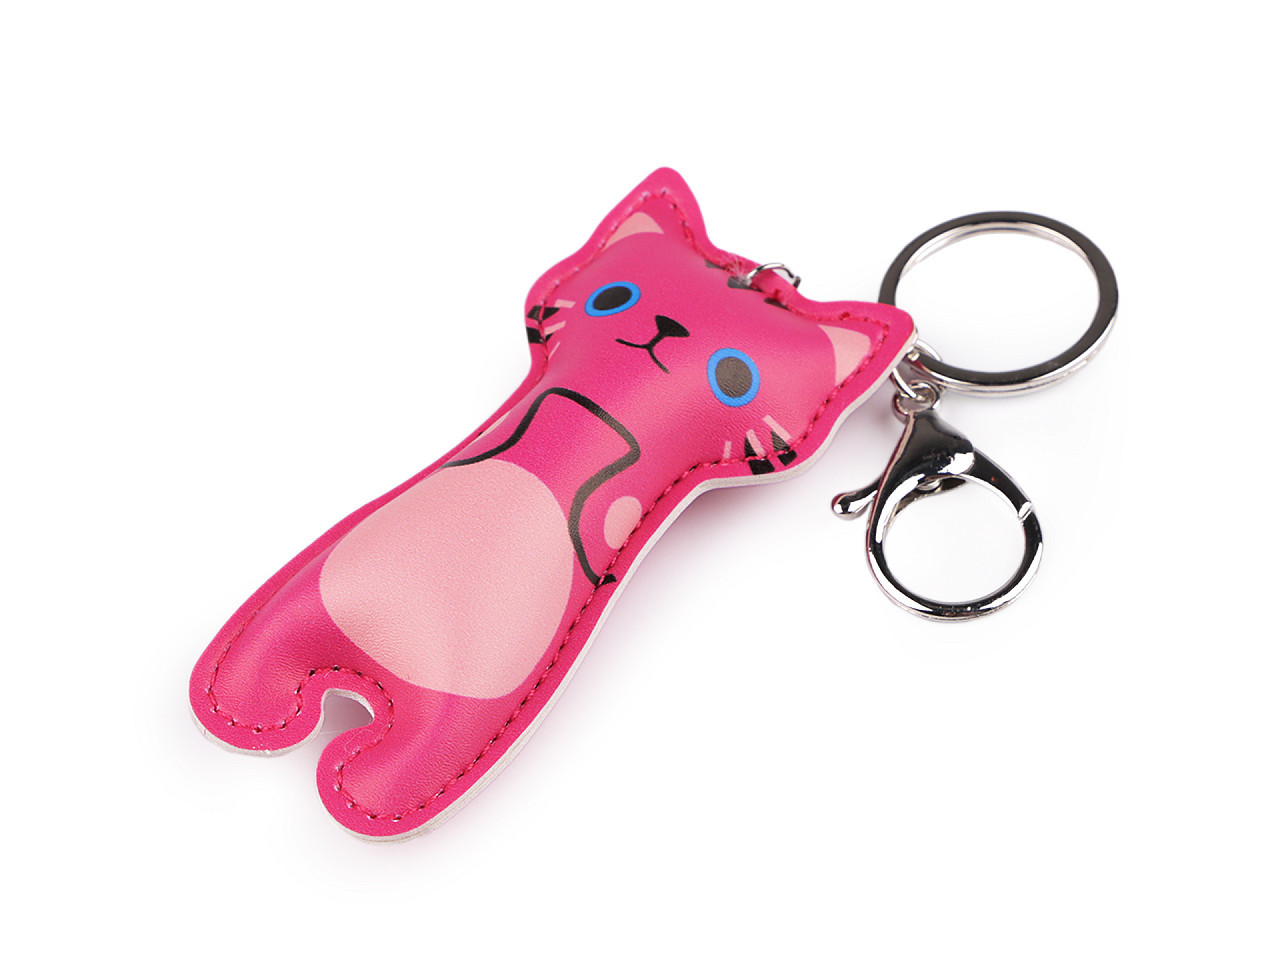 Přívěsek na batoh / klíče kočka, barva 5 pink